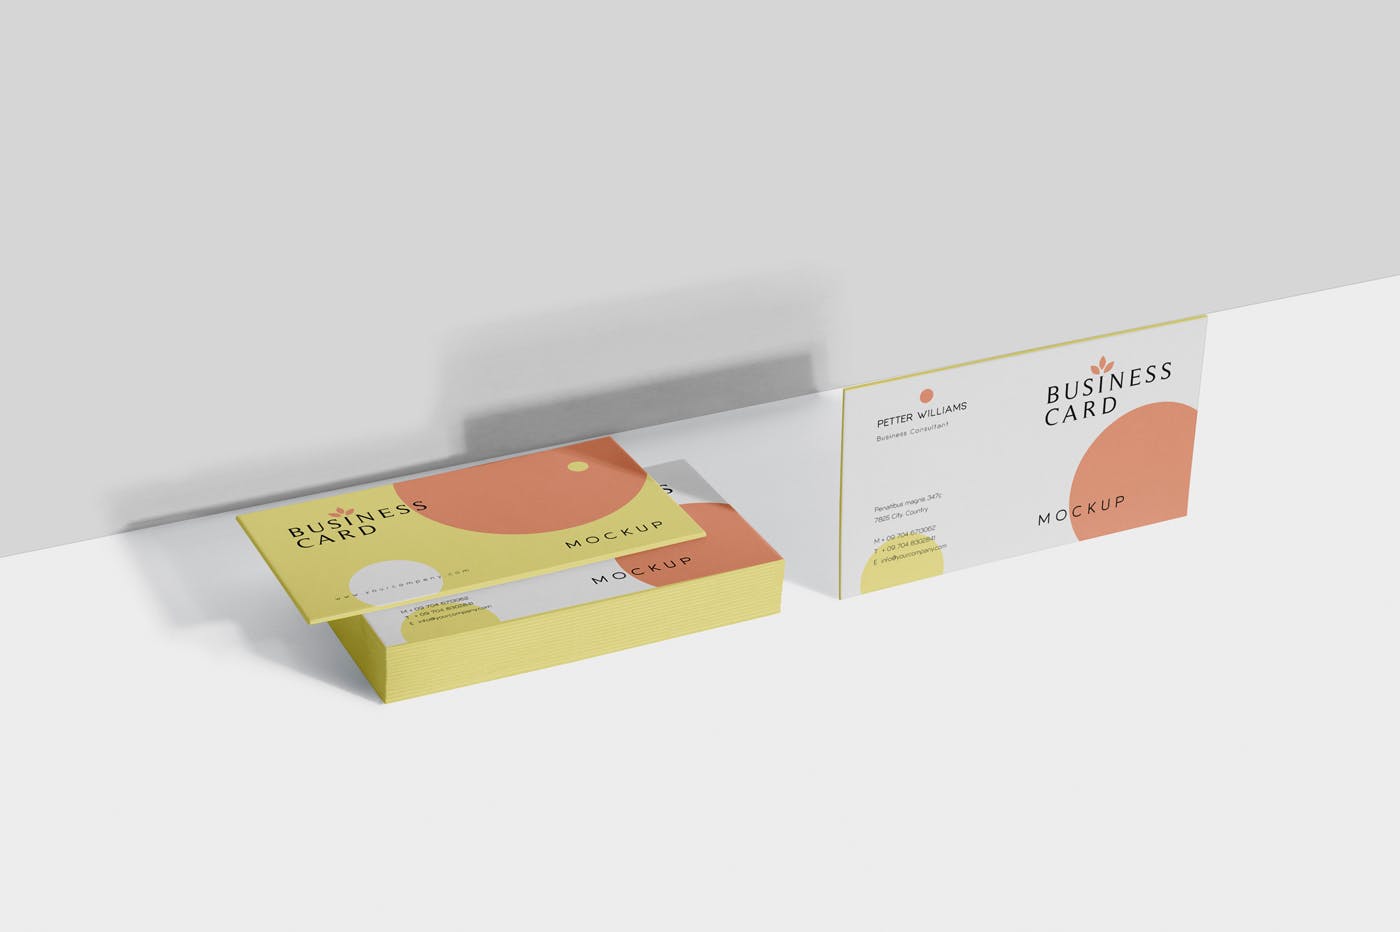 创意企业名片设计阴影效果图素材库精选 Business Card Mock-Ups插图(4)